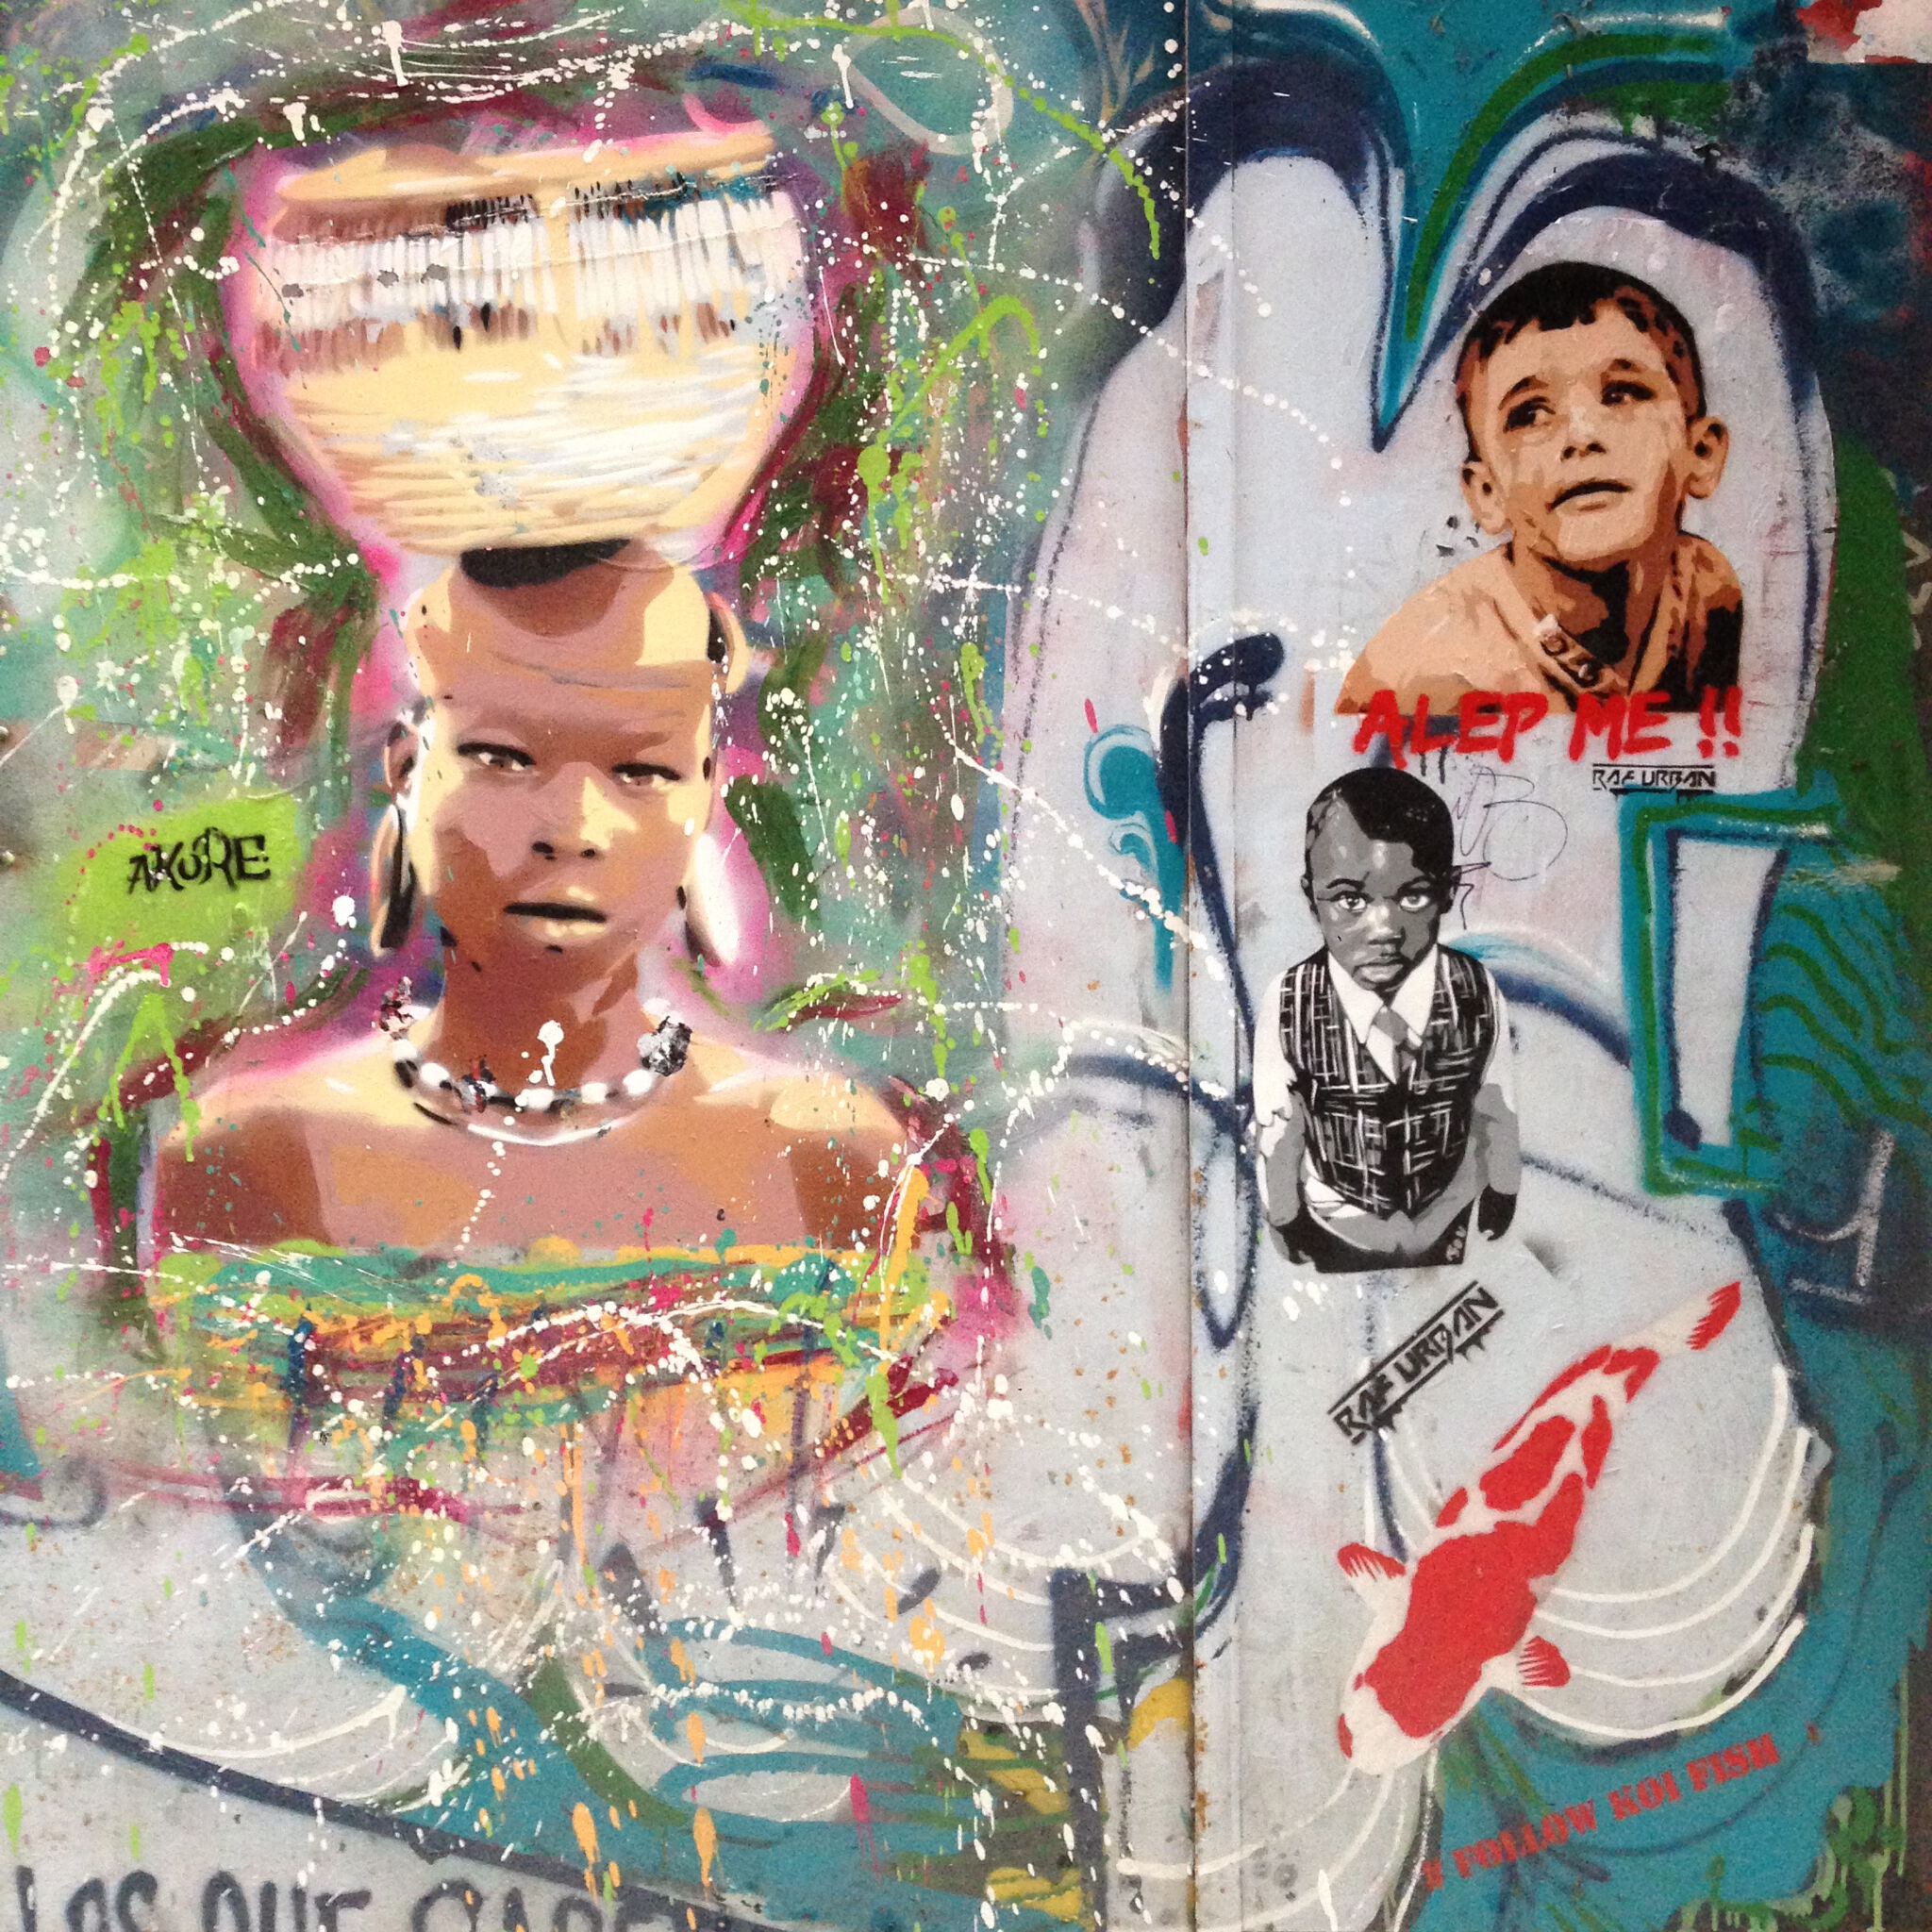 Akore, Fau, Raf_urban&mdash;Stencil Artists